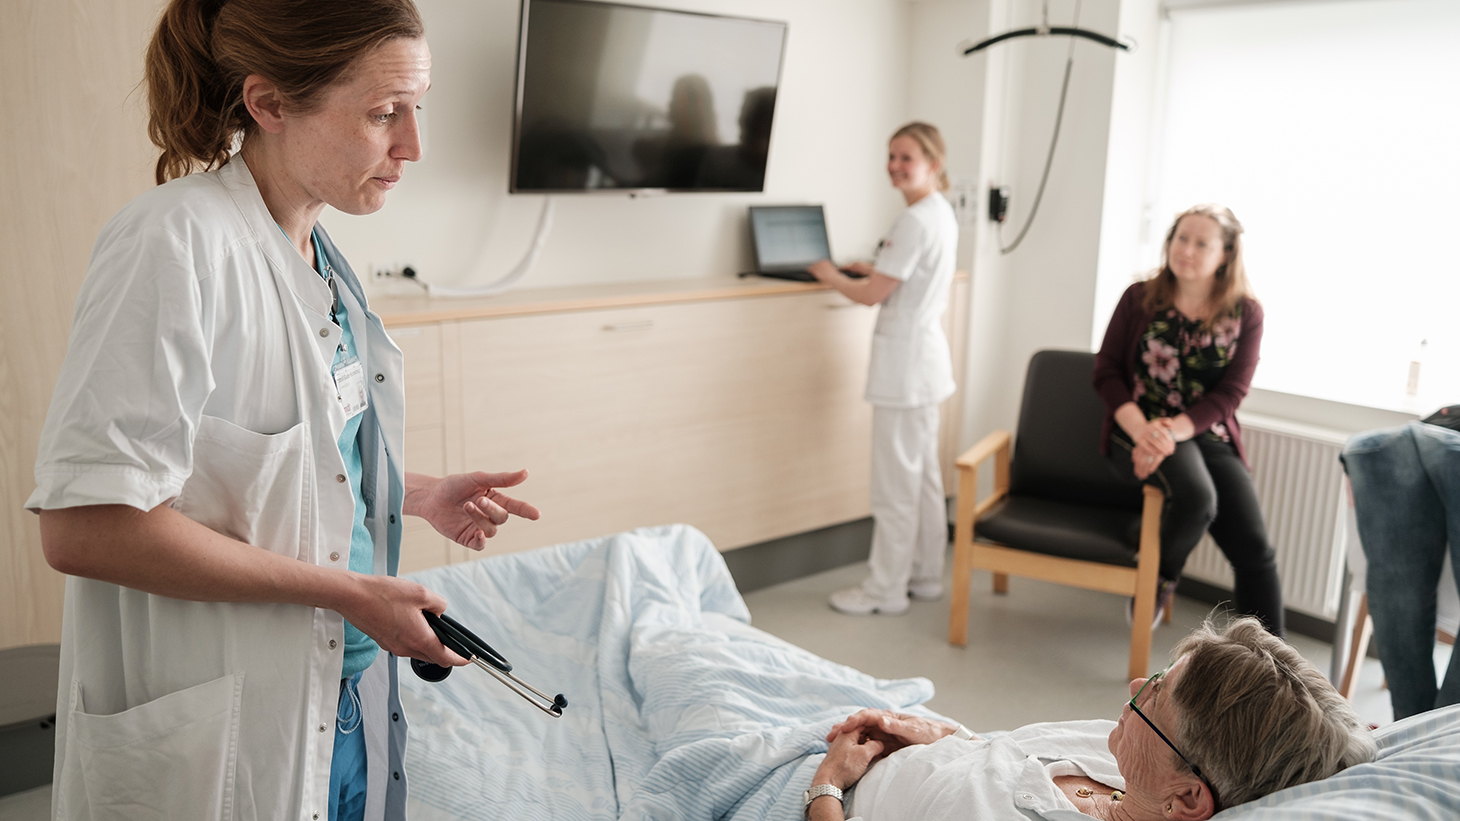 Sundhedsfagligt personale taler med indlagt patient som ligger i hospitalssengen, mens pårørende sidder i en stol ved siden af.